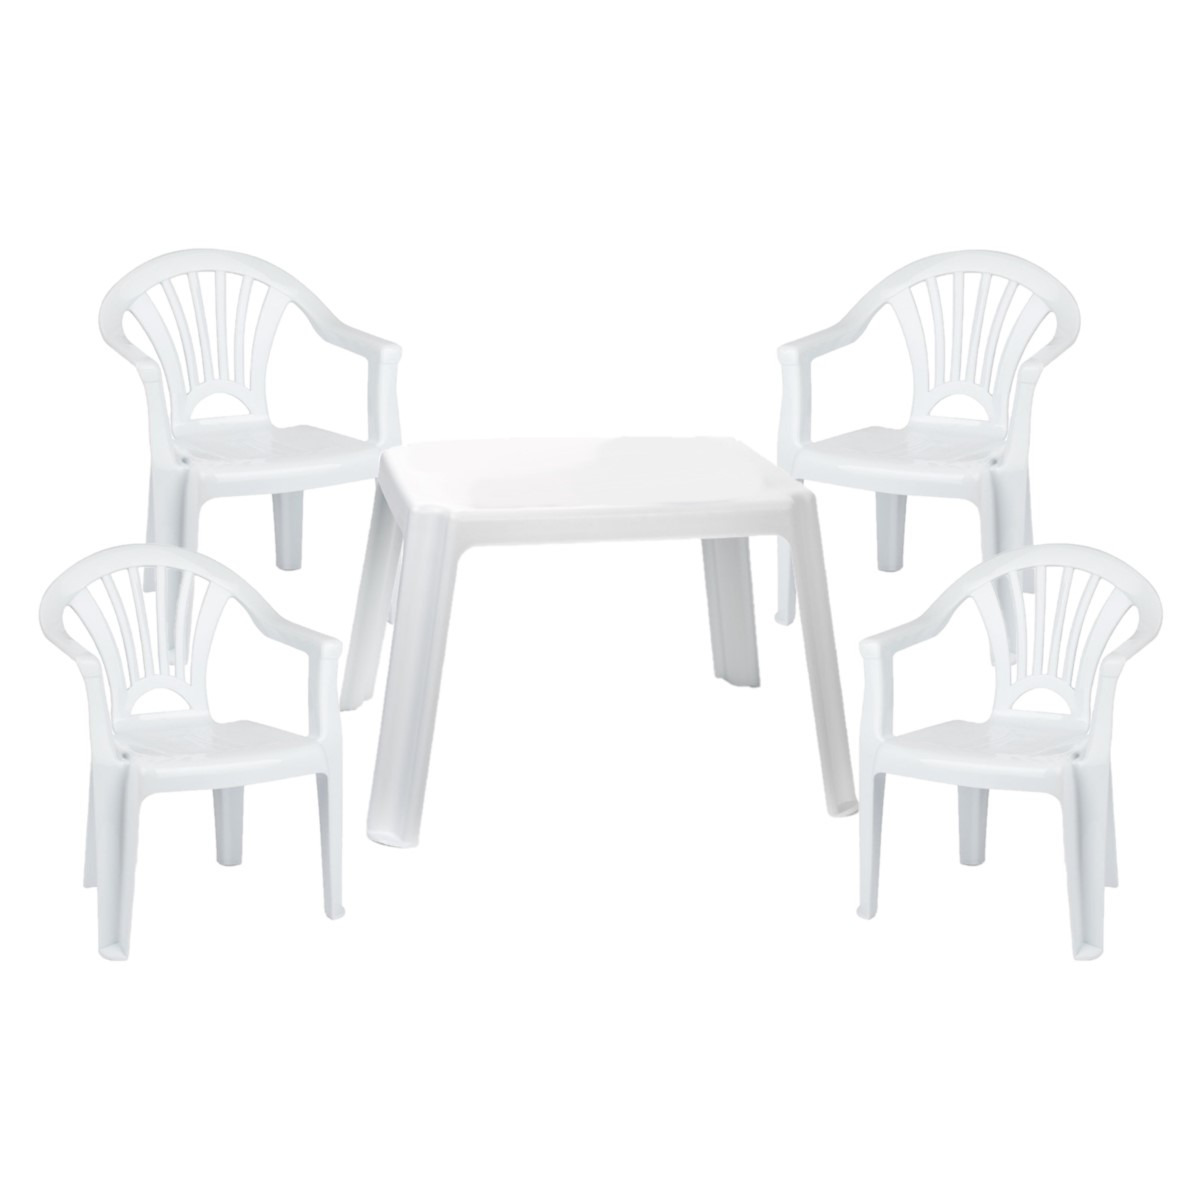 Kunststof kinder meubel set tafel met 4 stoelen wit